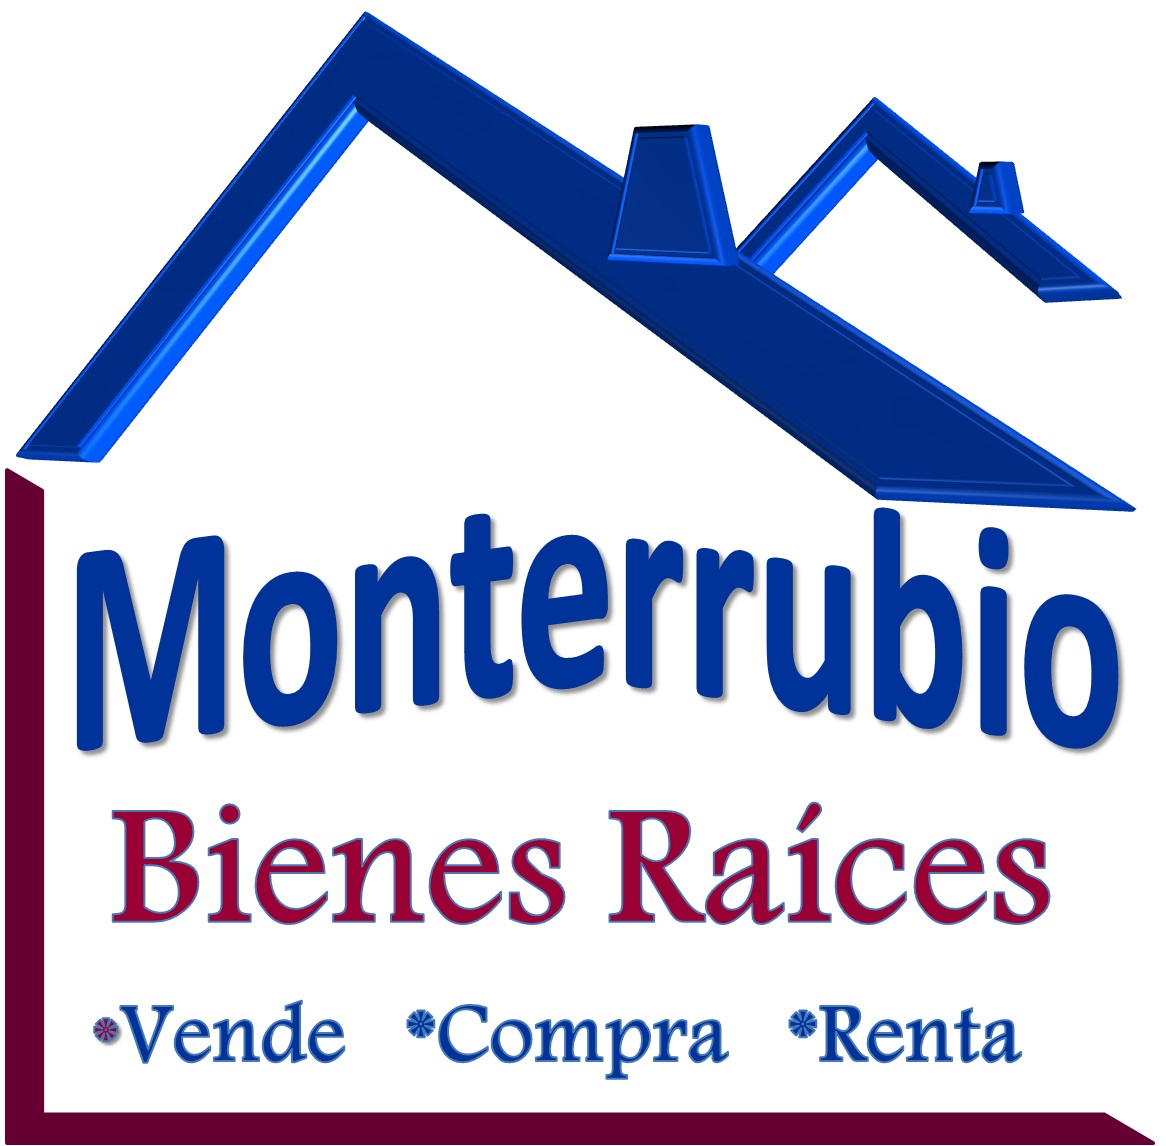 Monterrubio Bienes Raíces logo